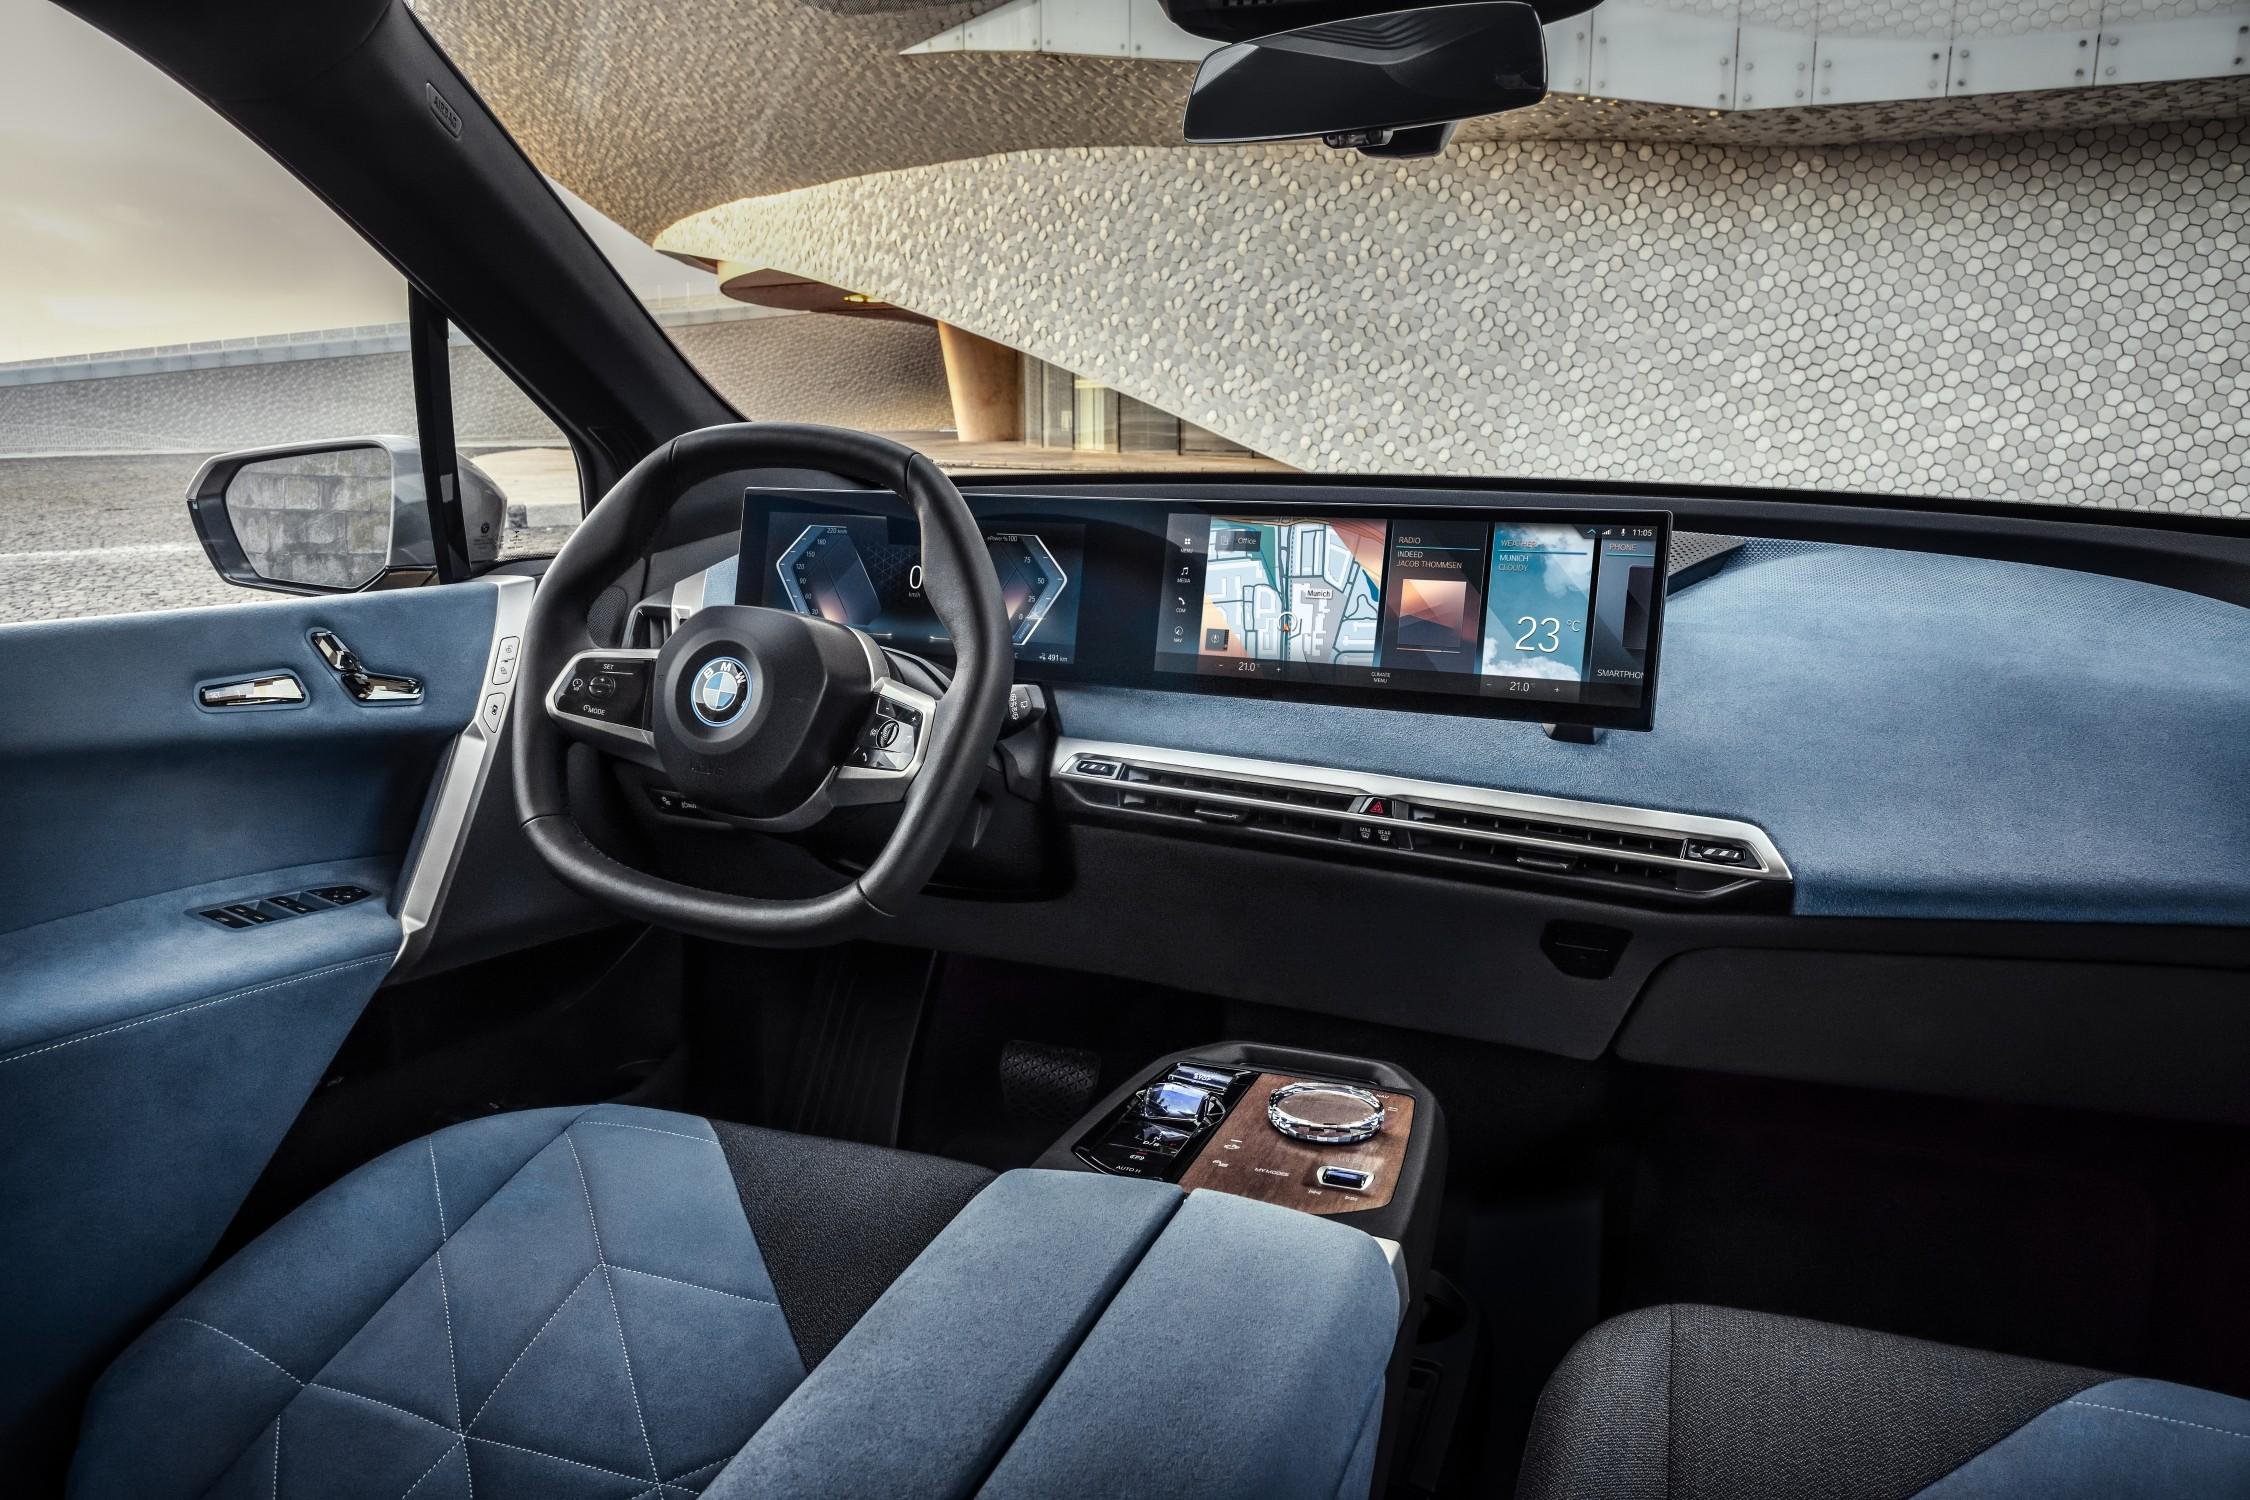 BMW iDrive revoluciona interação entre carro e motorista